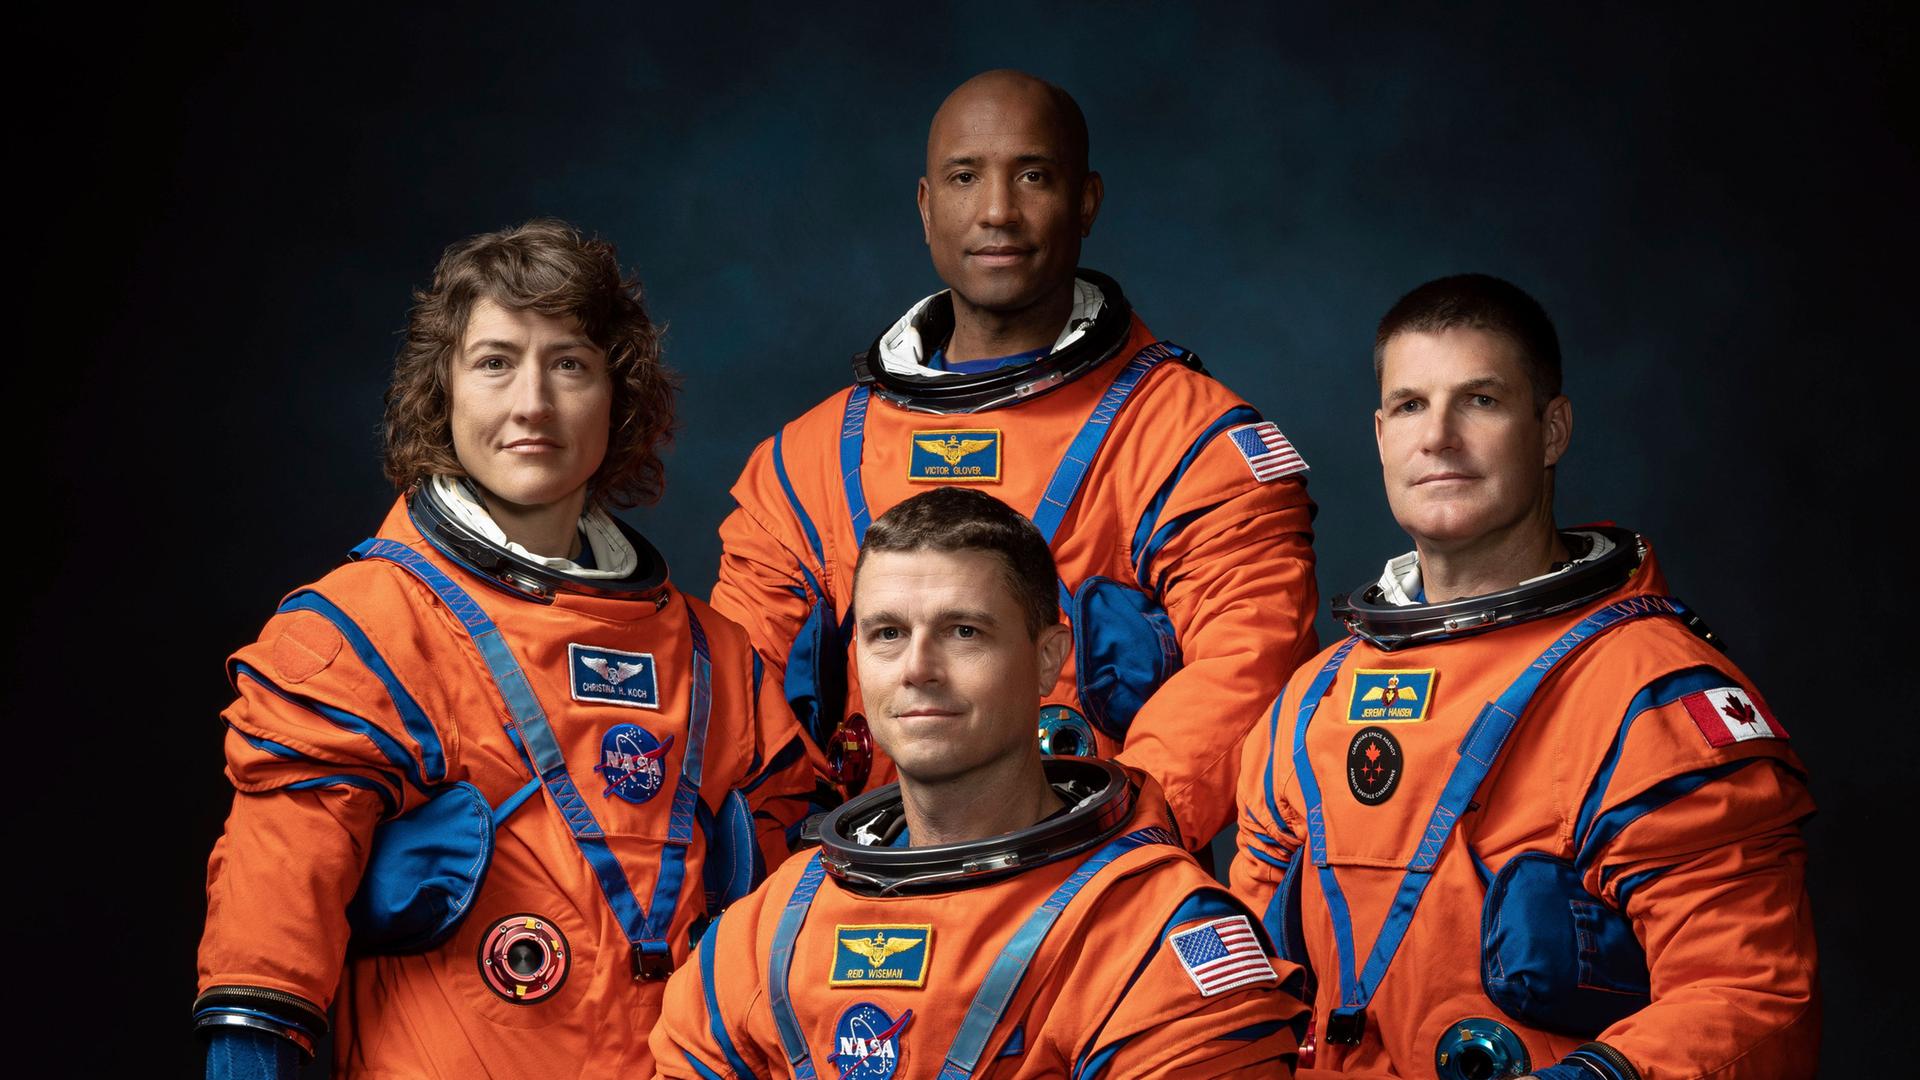 Das Foto zeigt die Mitglieder der Mond-Mission "Artemis II". Sie haben orangene Raum-Anzüge an.